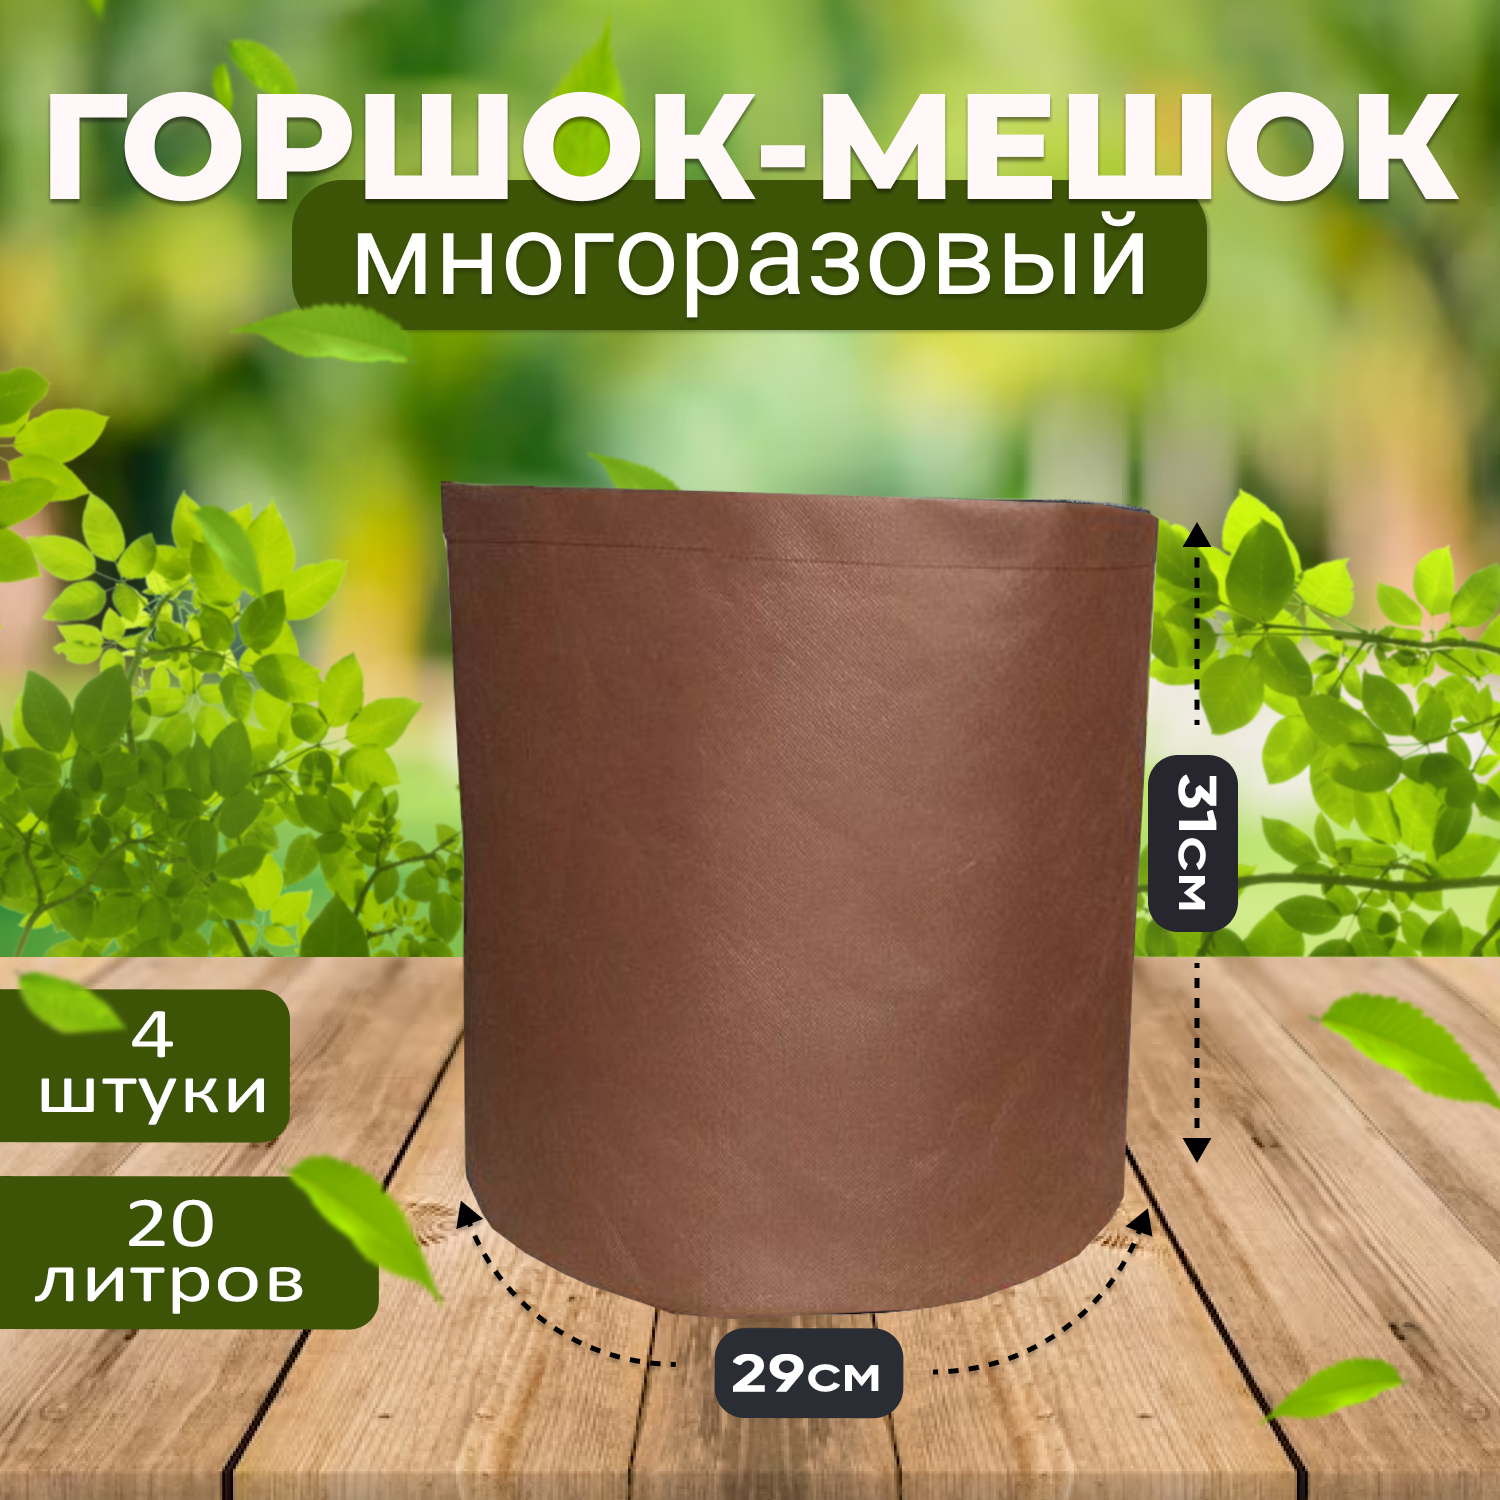 Мешок горшок текстильный из спанбонда Grower Green 20_litrov-Brown_4 20 литров, 4шт.